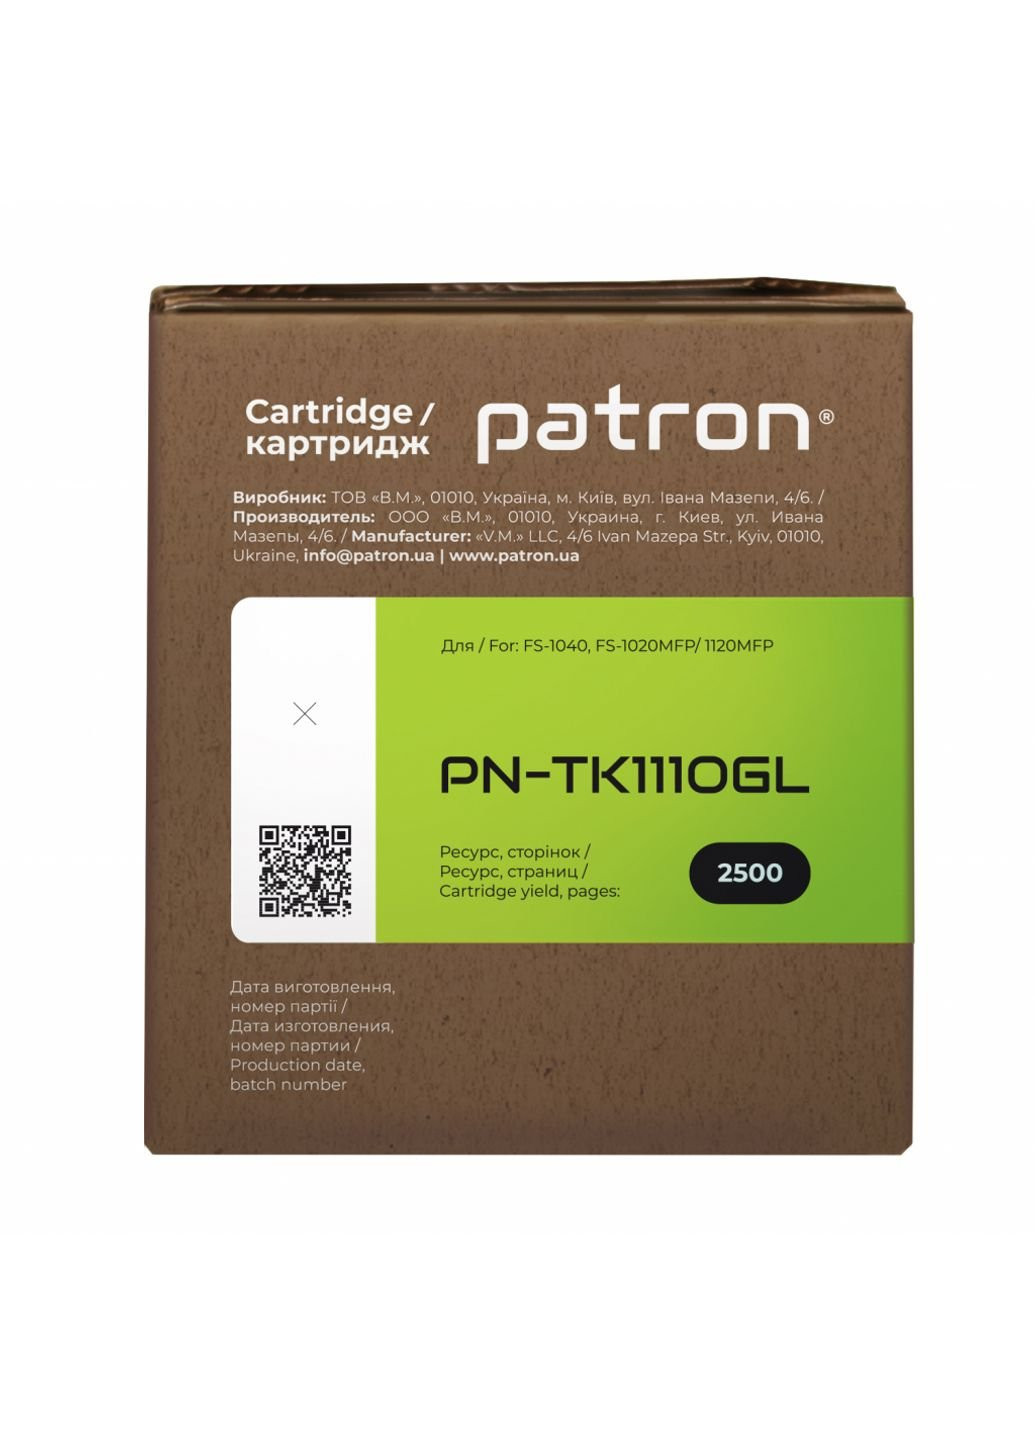 Тонер-картридж (PN-TK1110GL) Patron kyocera tk-1110 green label (247617707)